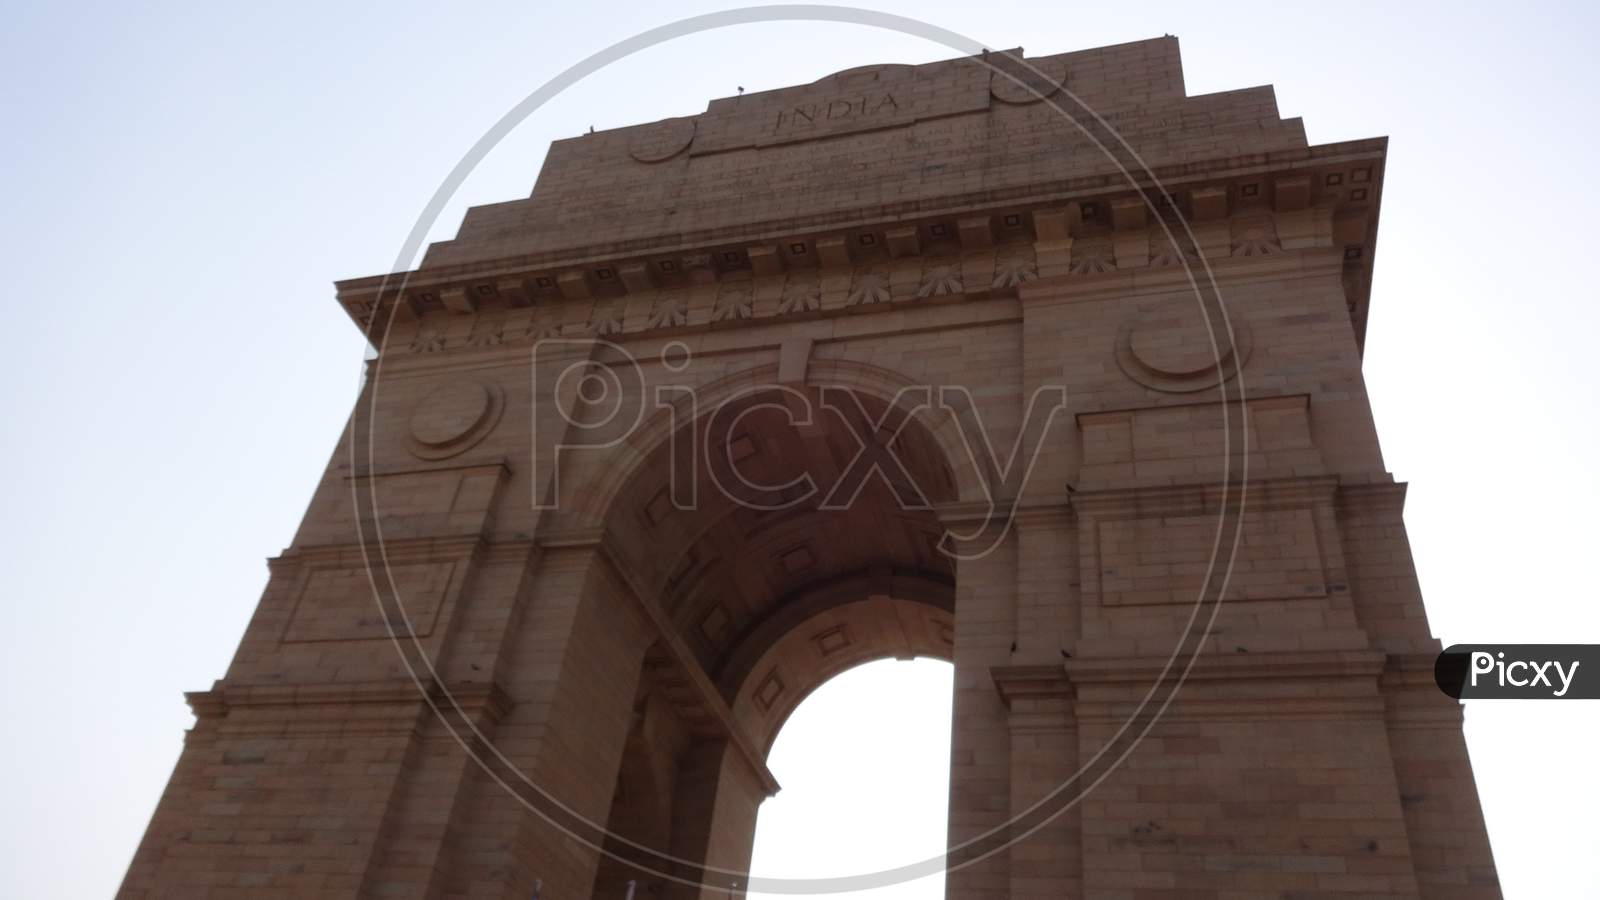 Delhi gate, India gate